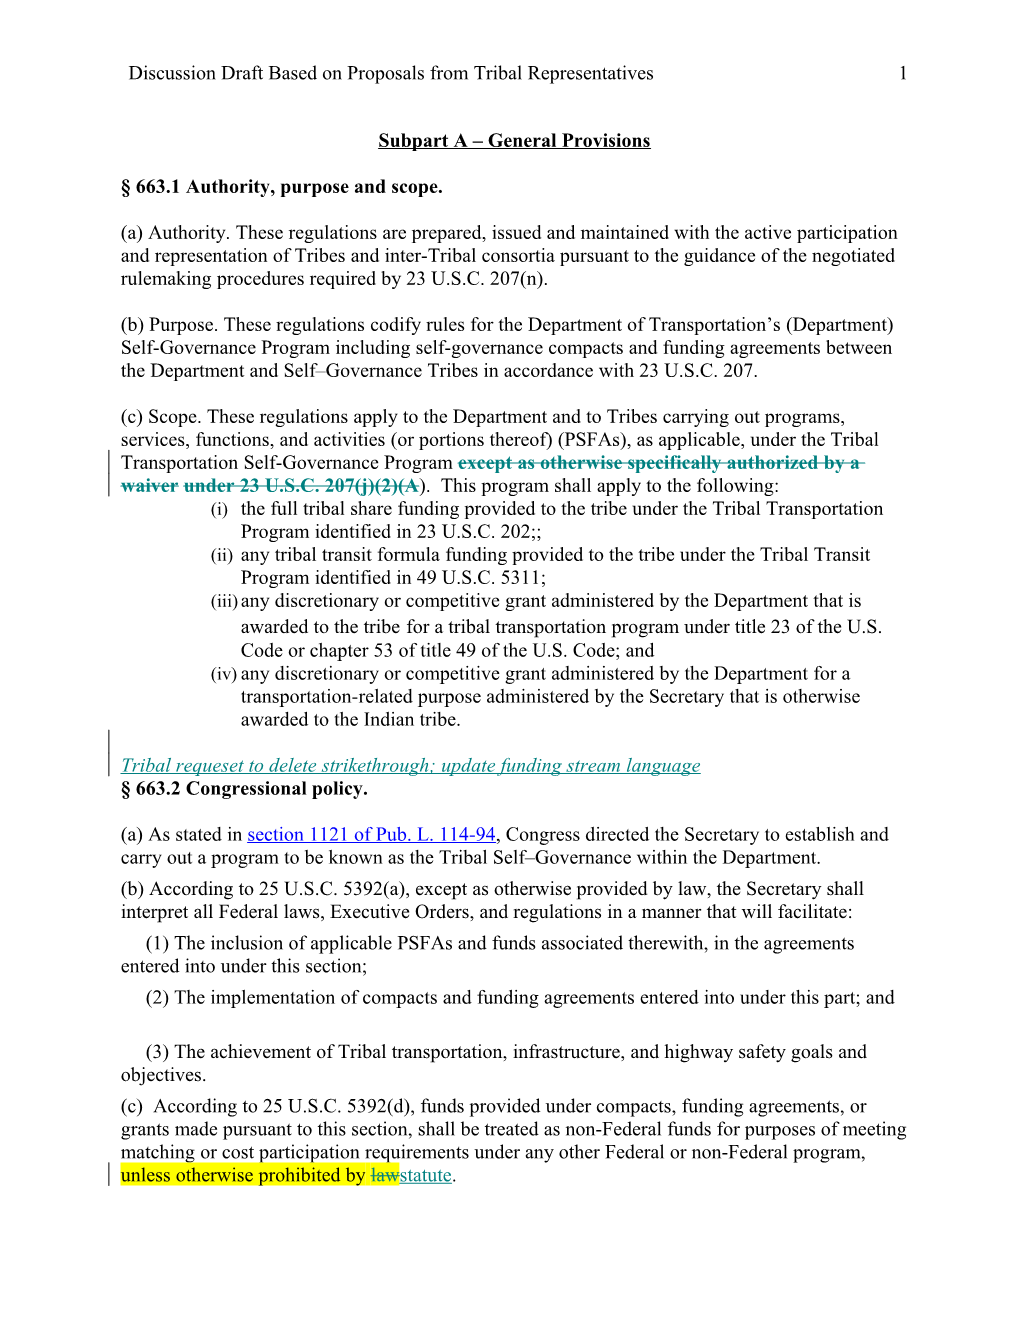 FHWA Proposed Regulation for OST Comment (Nov 26, 2017 Draft)